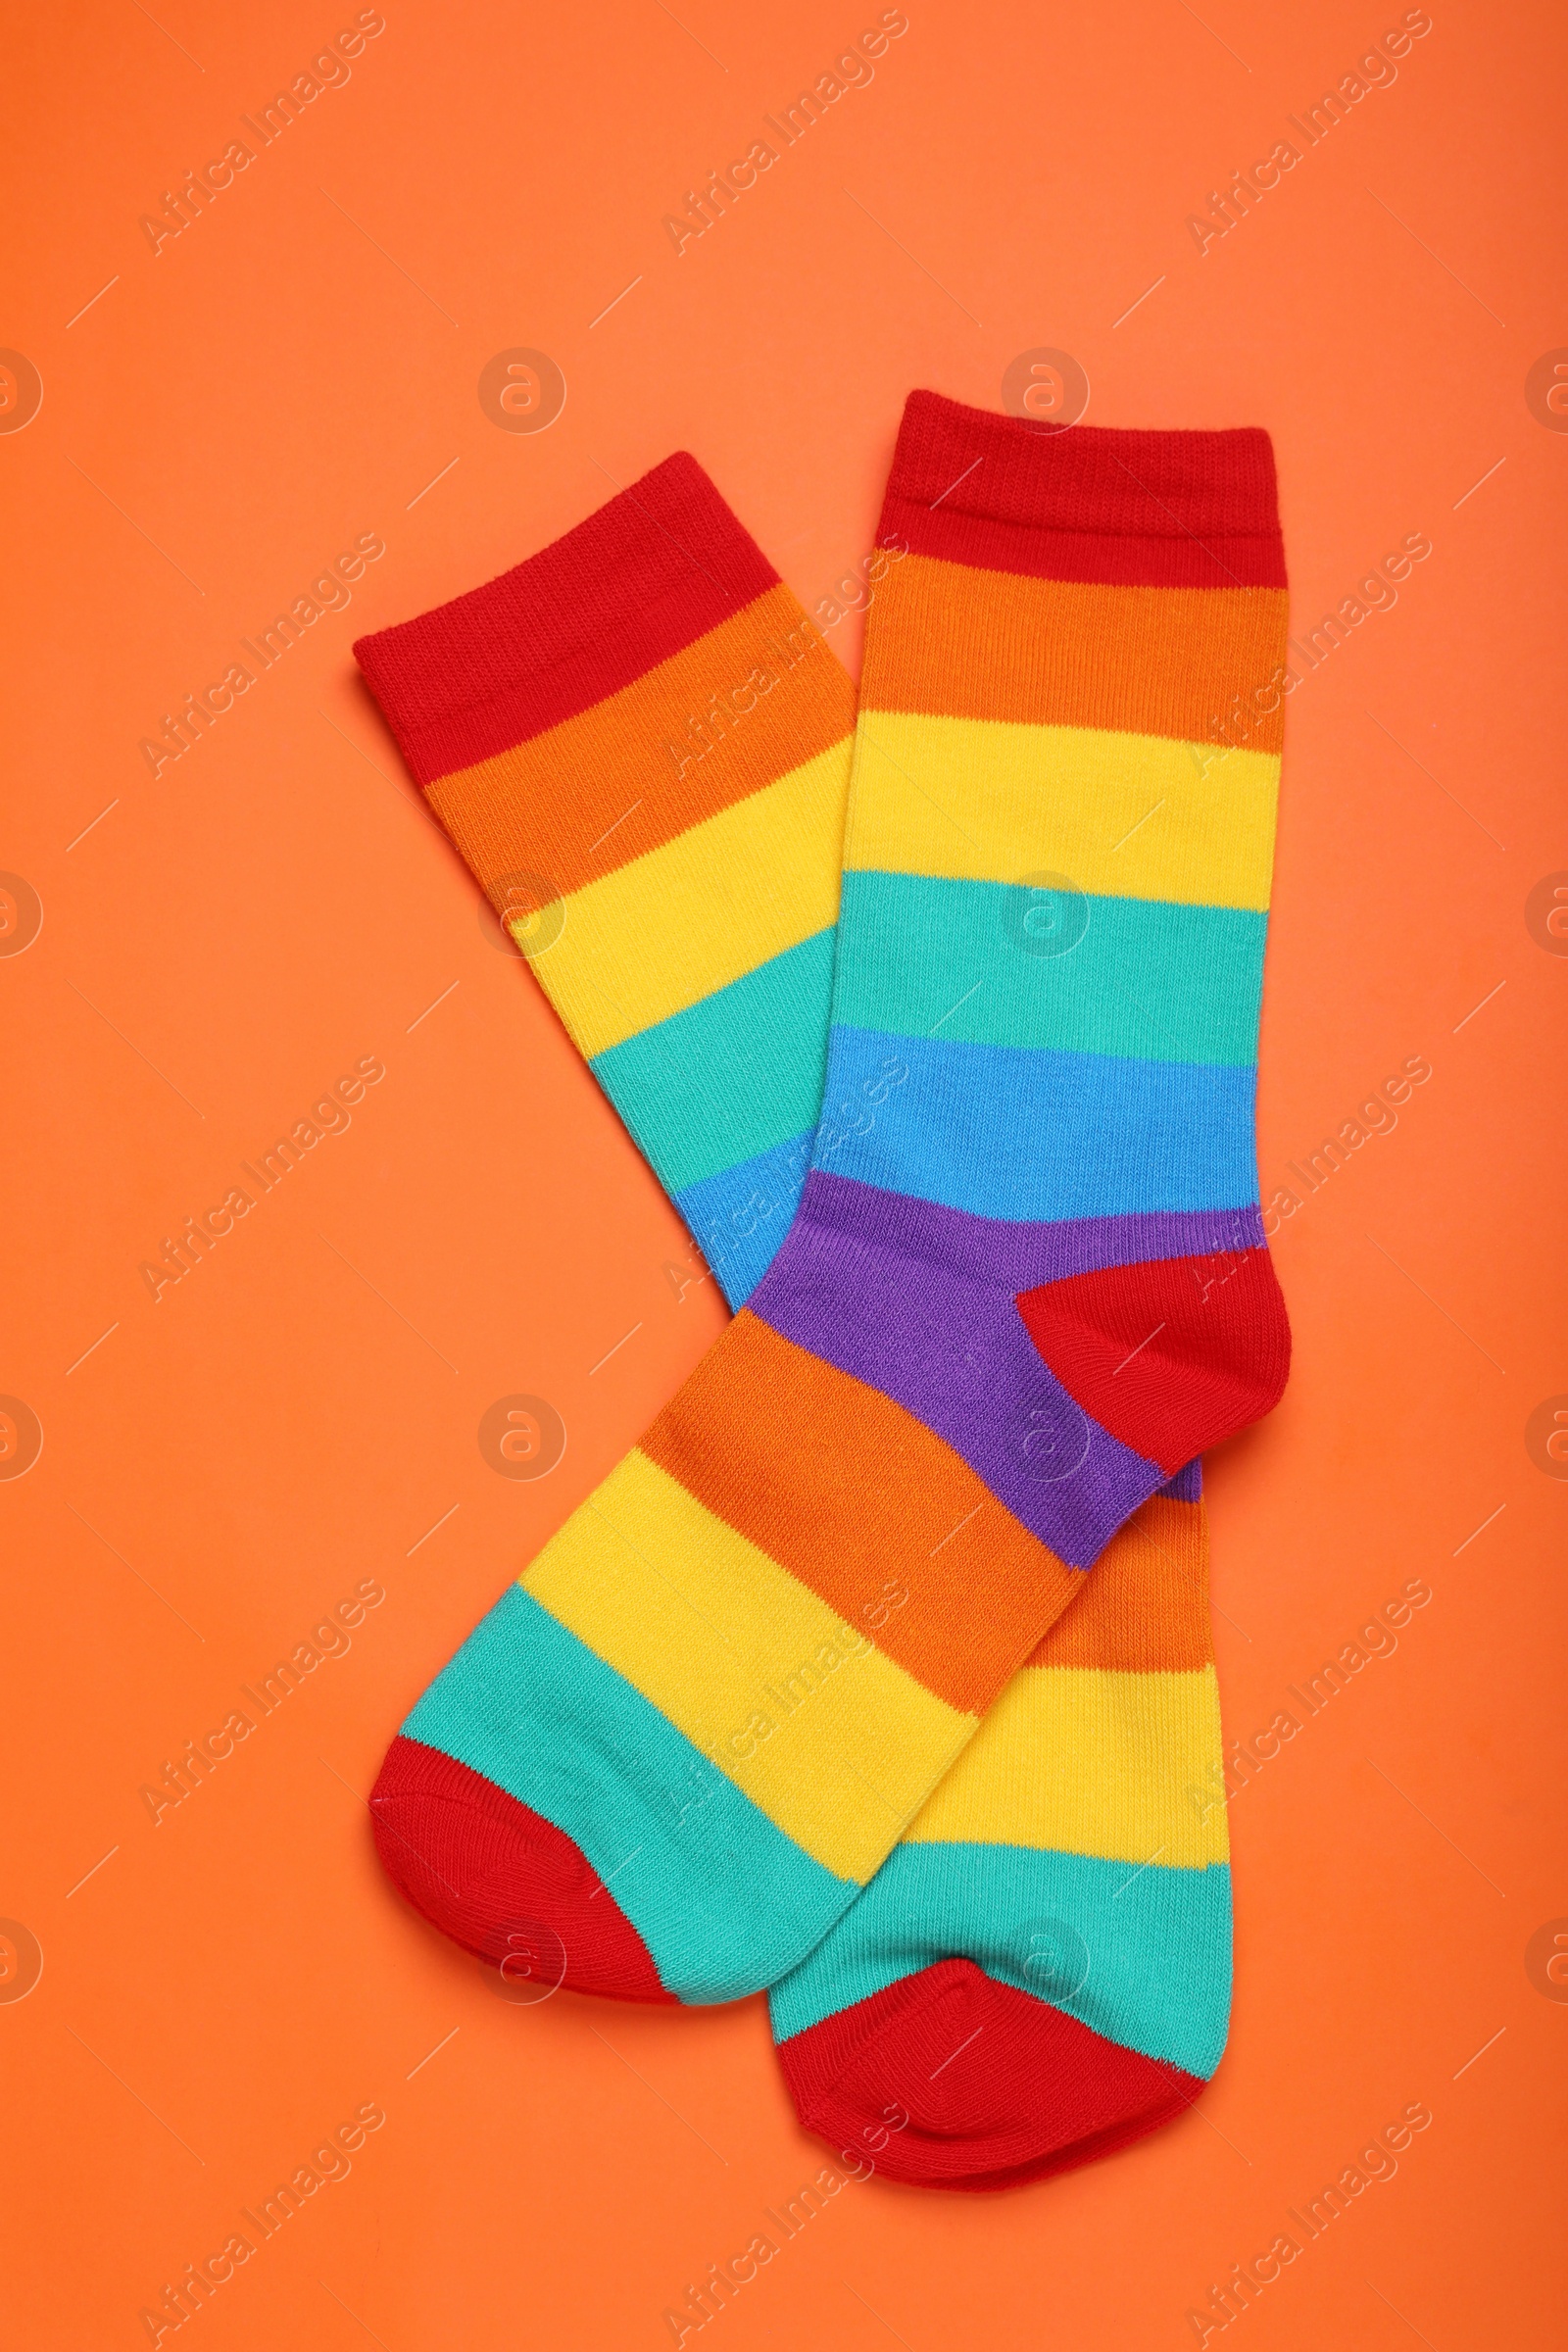 Photo of Rainbow socks on orange background, flat lay. LGBT pride